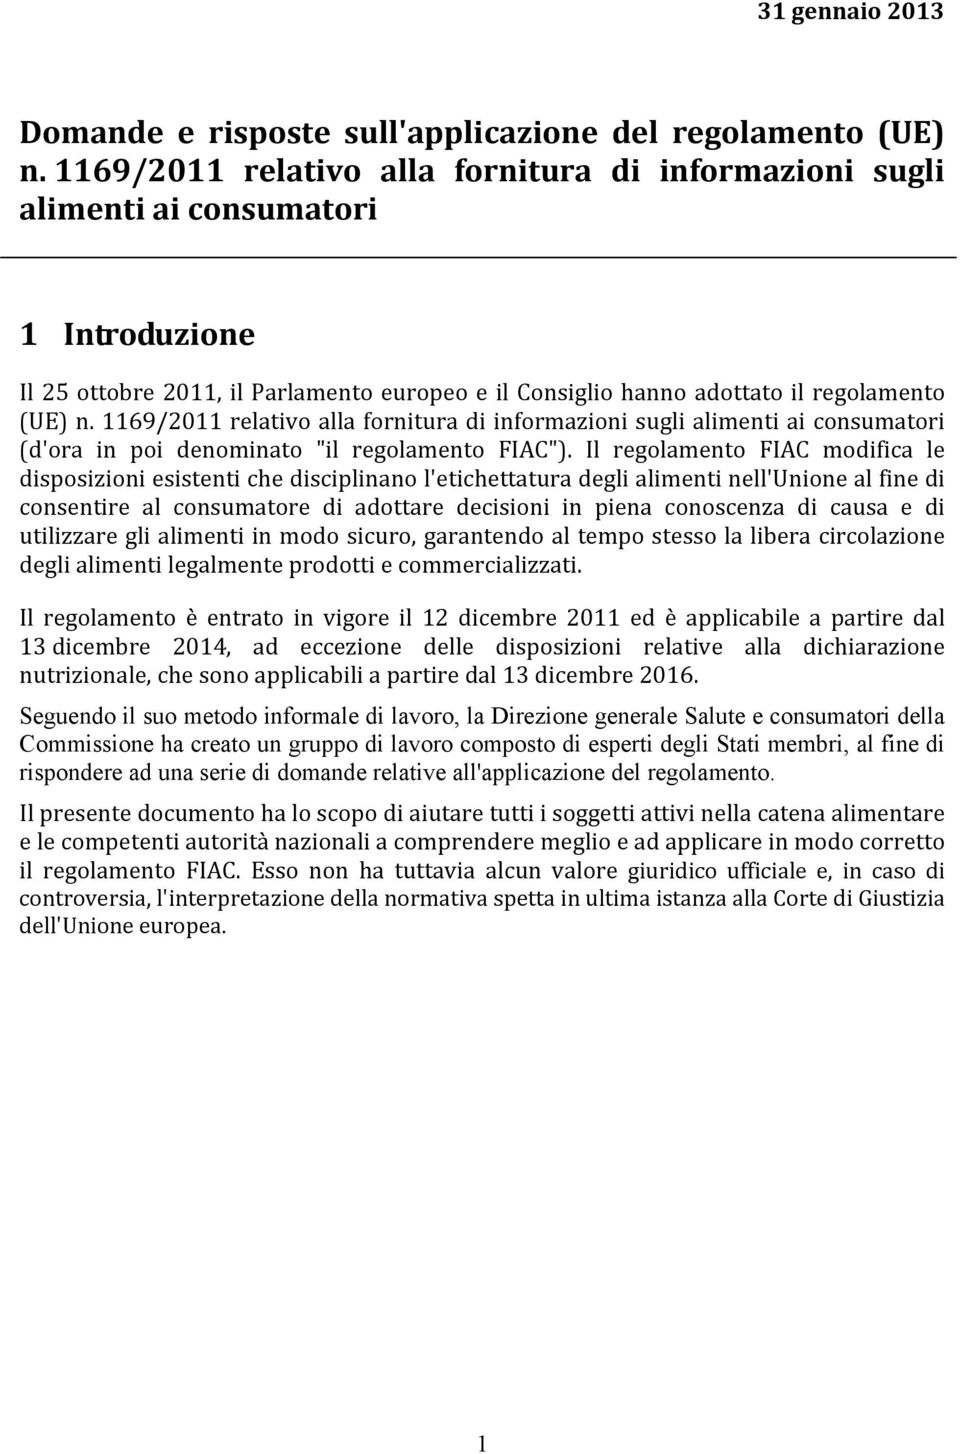 1169/2011 relativo alla fornitura di informazioni sugli alimenti ai consumatori (d'ora in poi denominato "il regolamento FIAC").